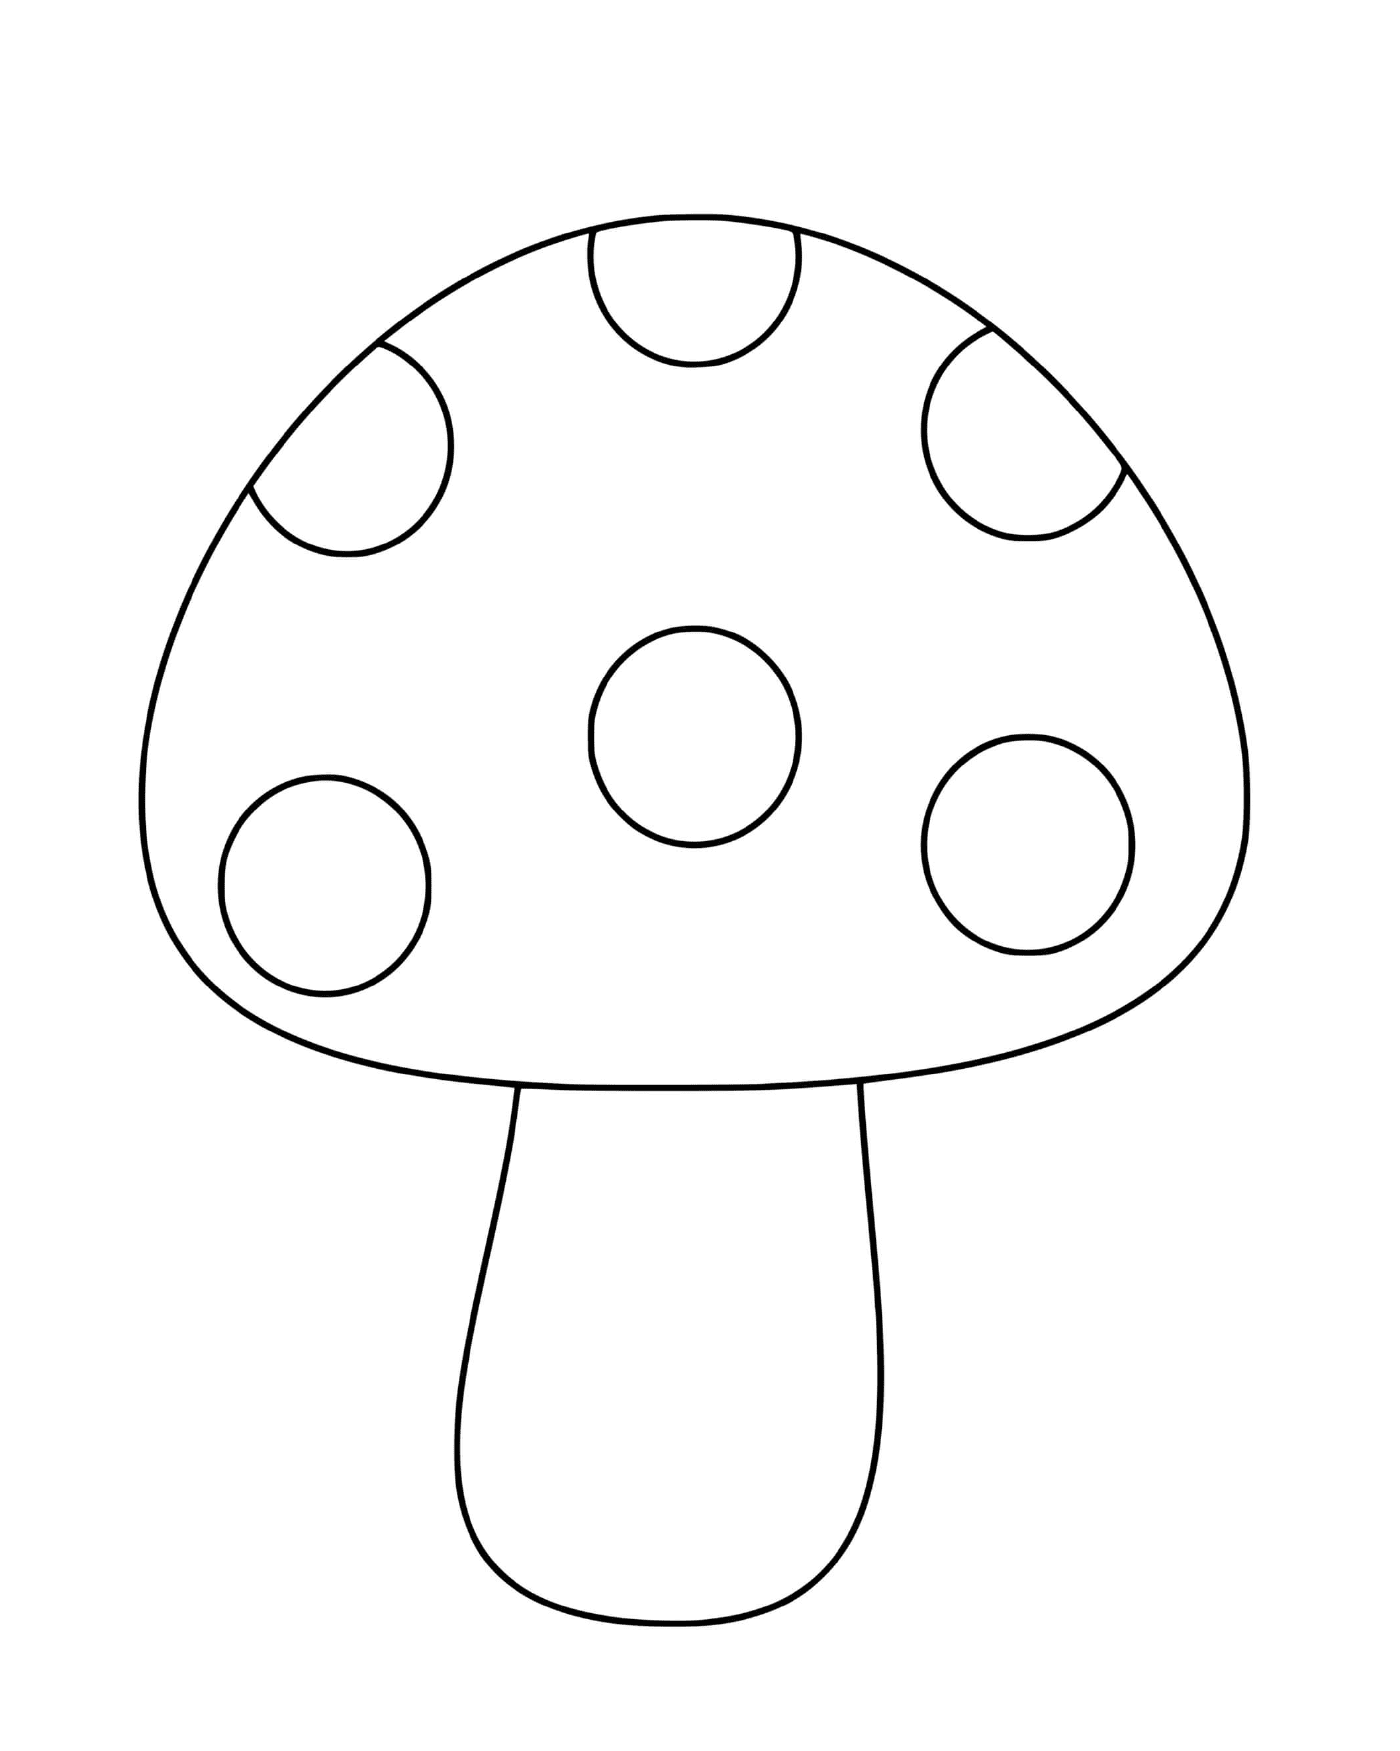  Ein einfacher Pilz mit klassischem Aussehen 